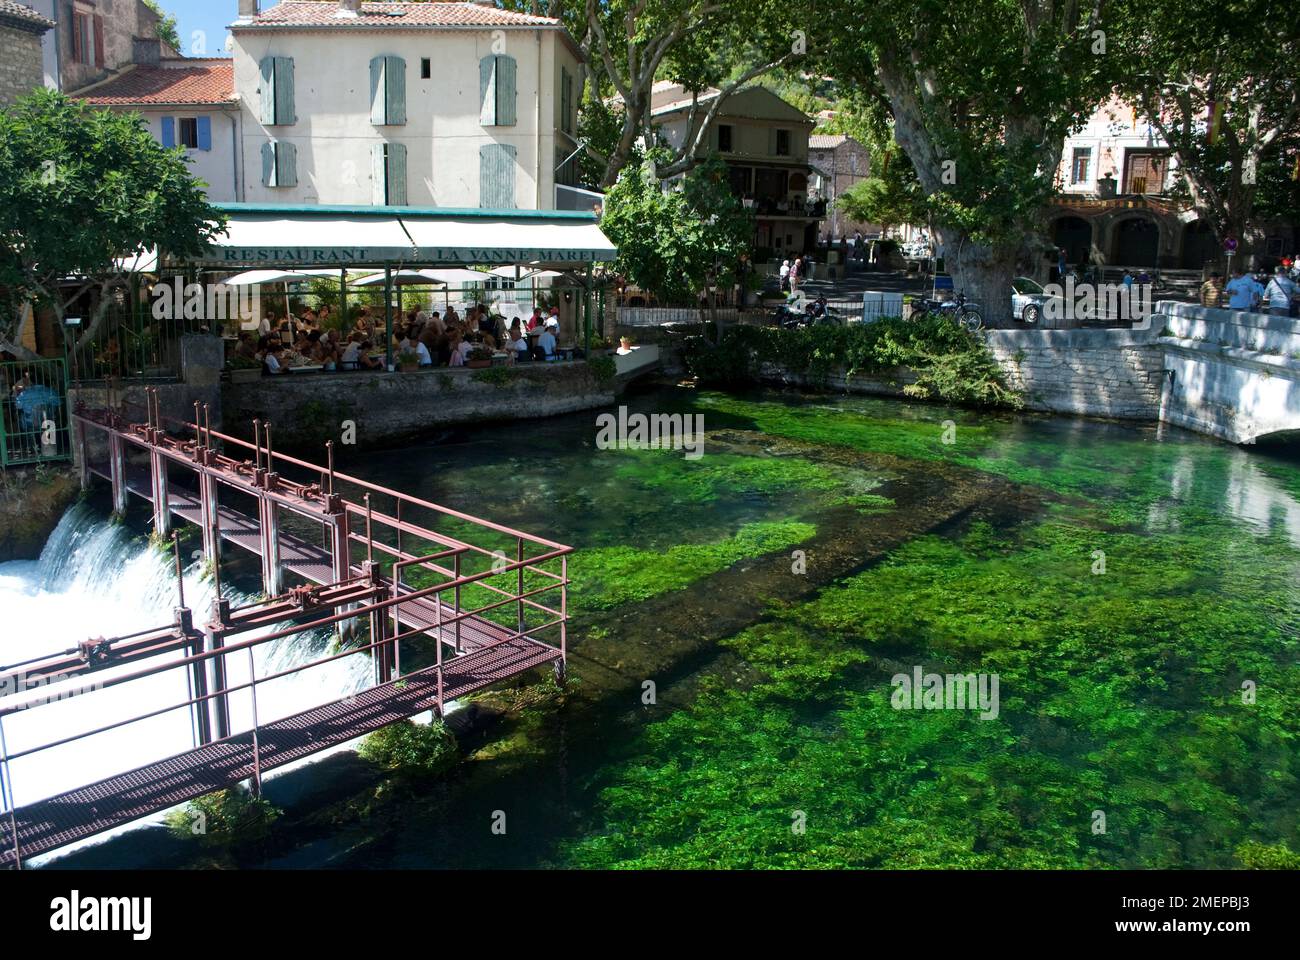 France, Vaucluse, Fontaine-de-Vaucluse, river at La Vanne Marel restaurant Stock Photo